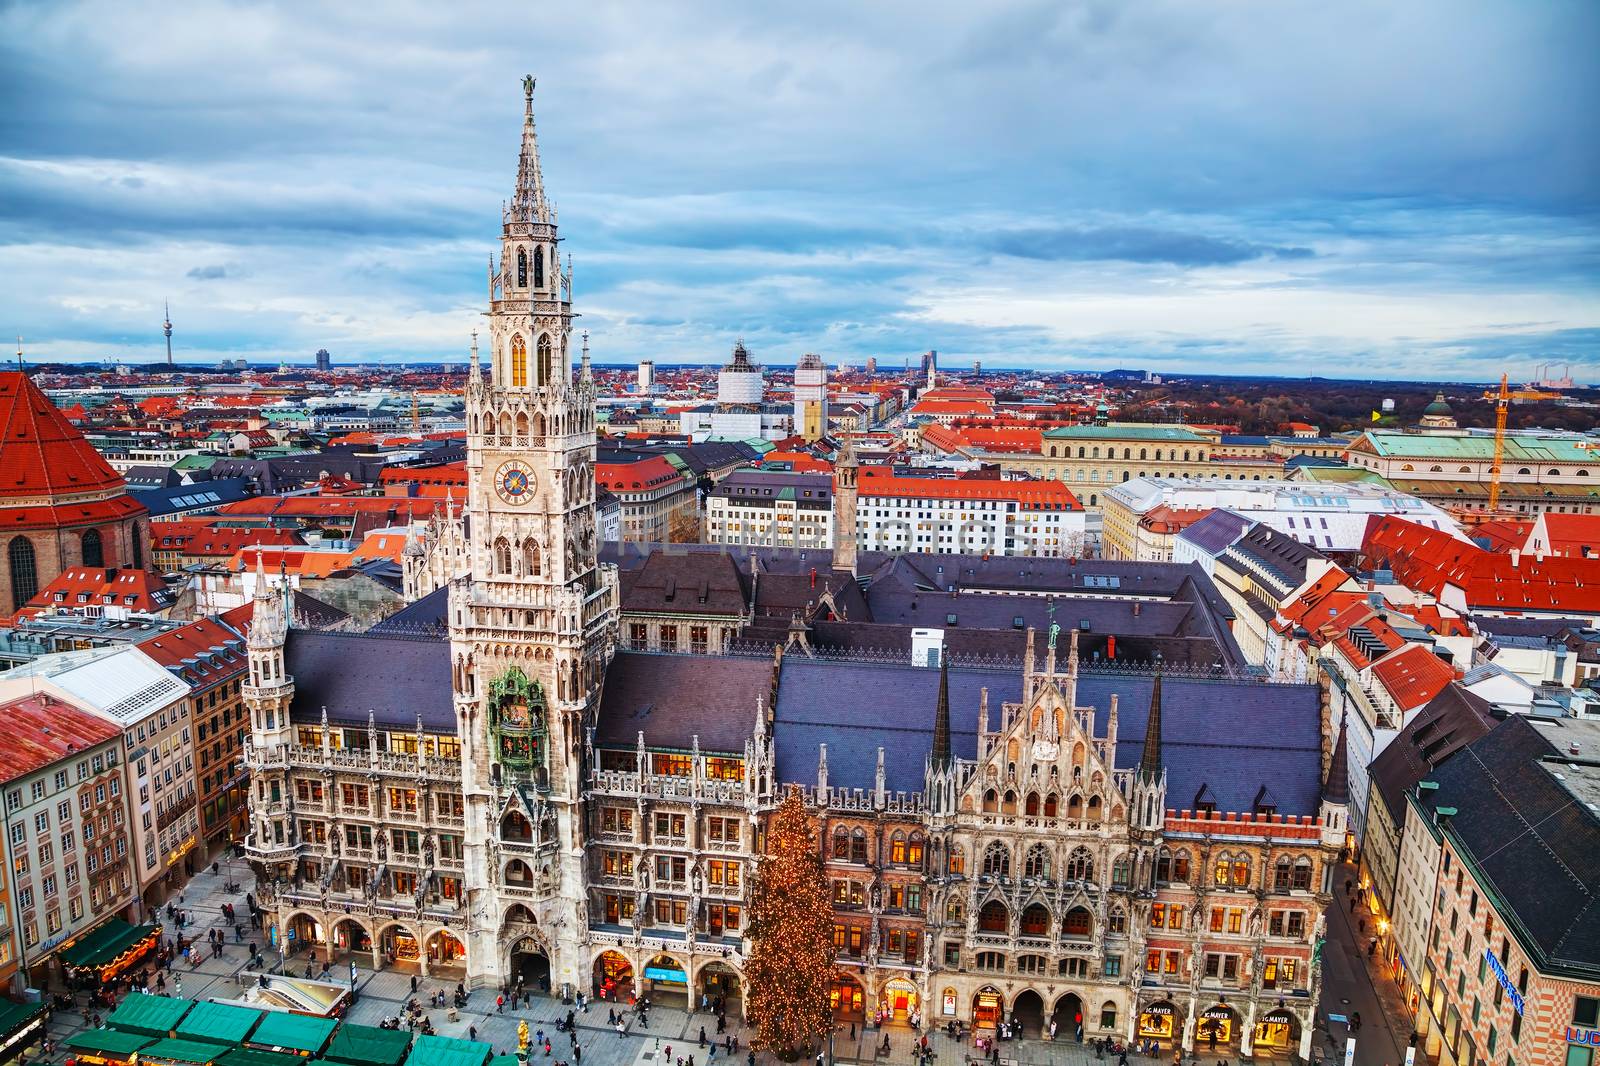  Aerial view of Marienplatz in Munich by AndreyKr